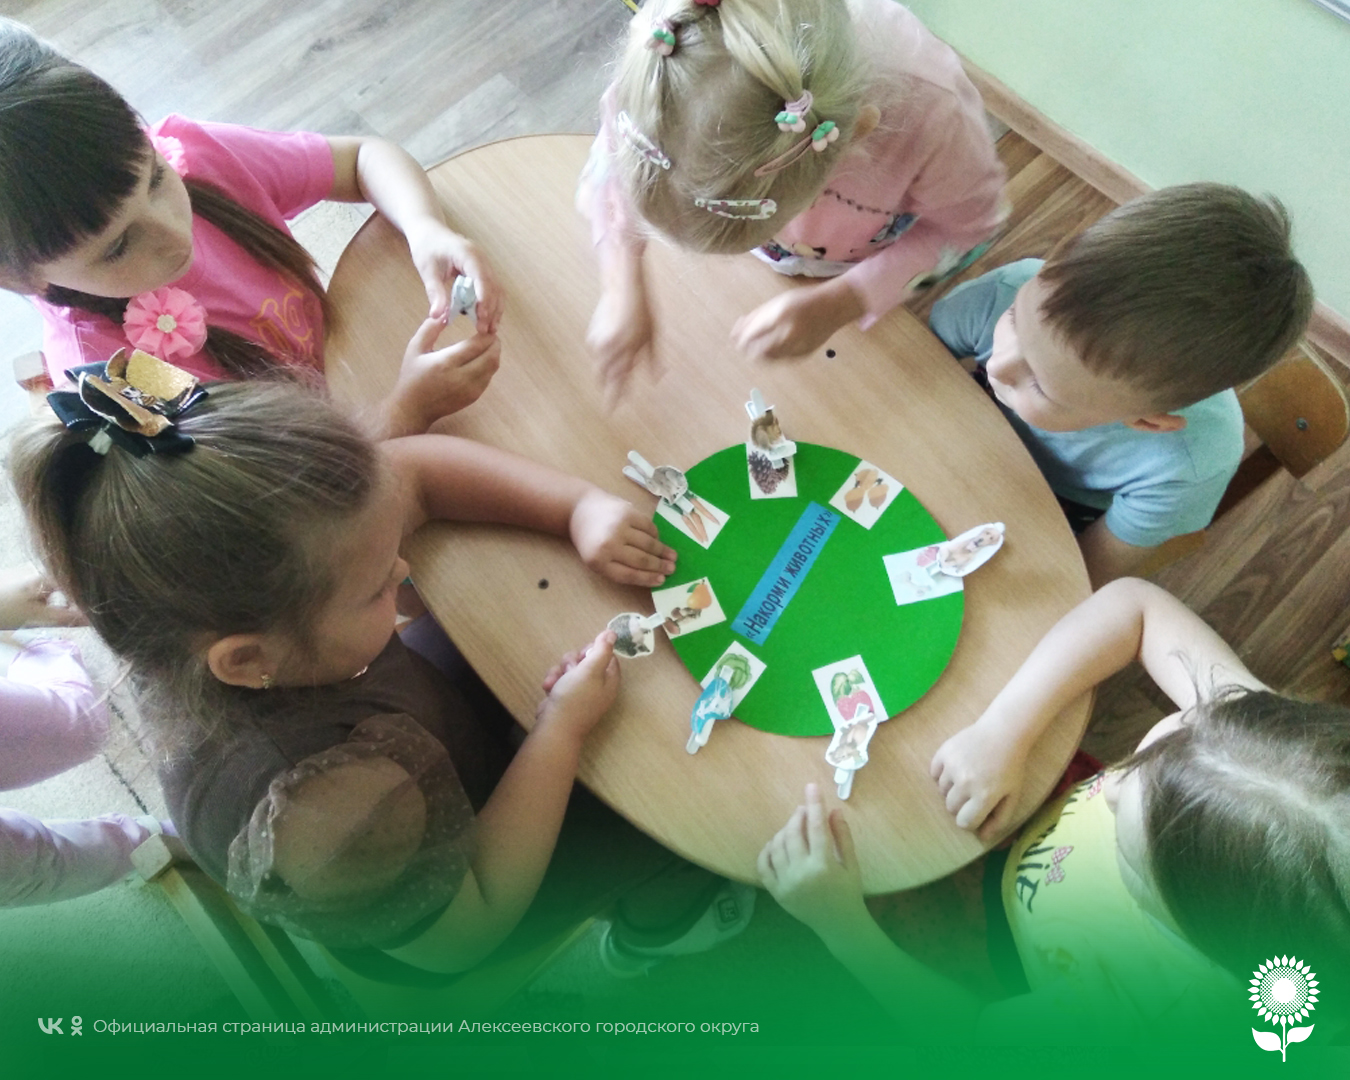 В детских садах Алексеевского городского округа педагоги организовали дидактическую игру «Лес, природа и мы».